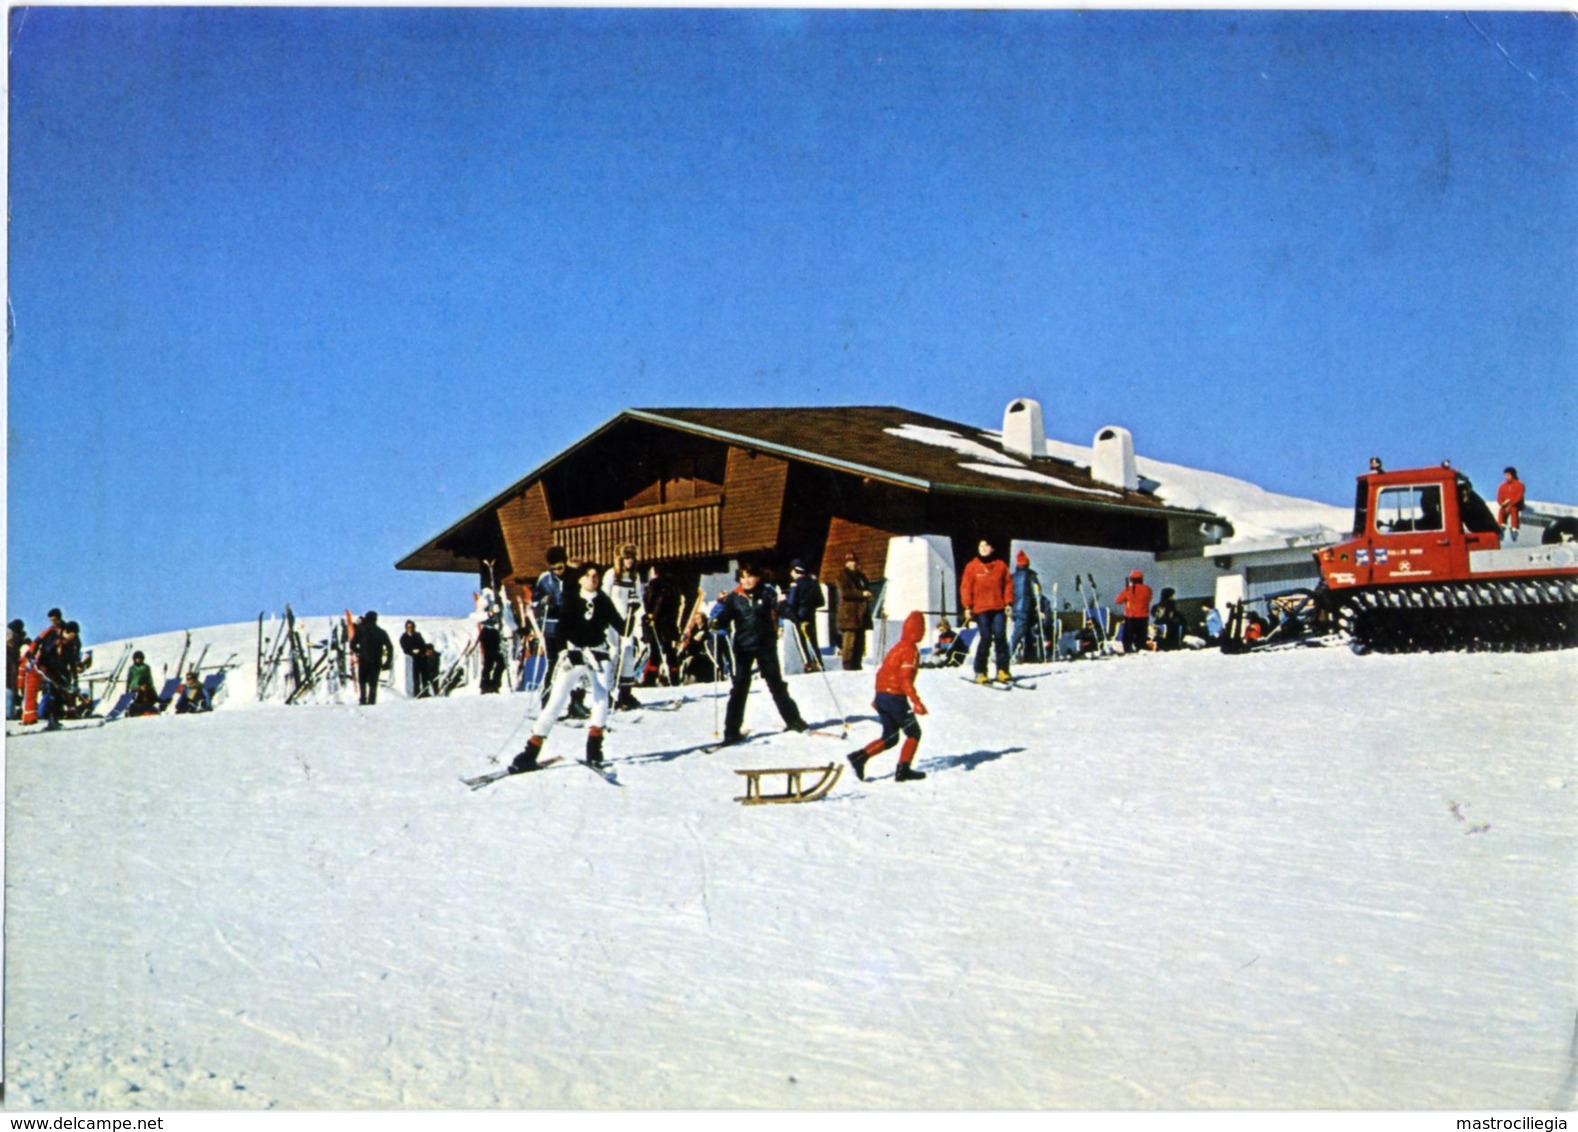 GALLIO  VICENZA  Melette 2000  Altipiano Di Asiago  Baita La Solaia  Sci Ski Slittino  Gatto Delle Nevi - Vicenza